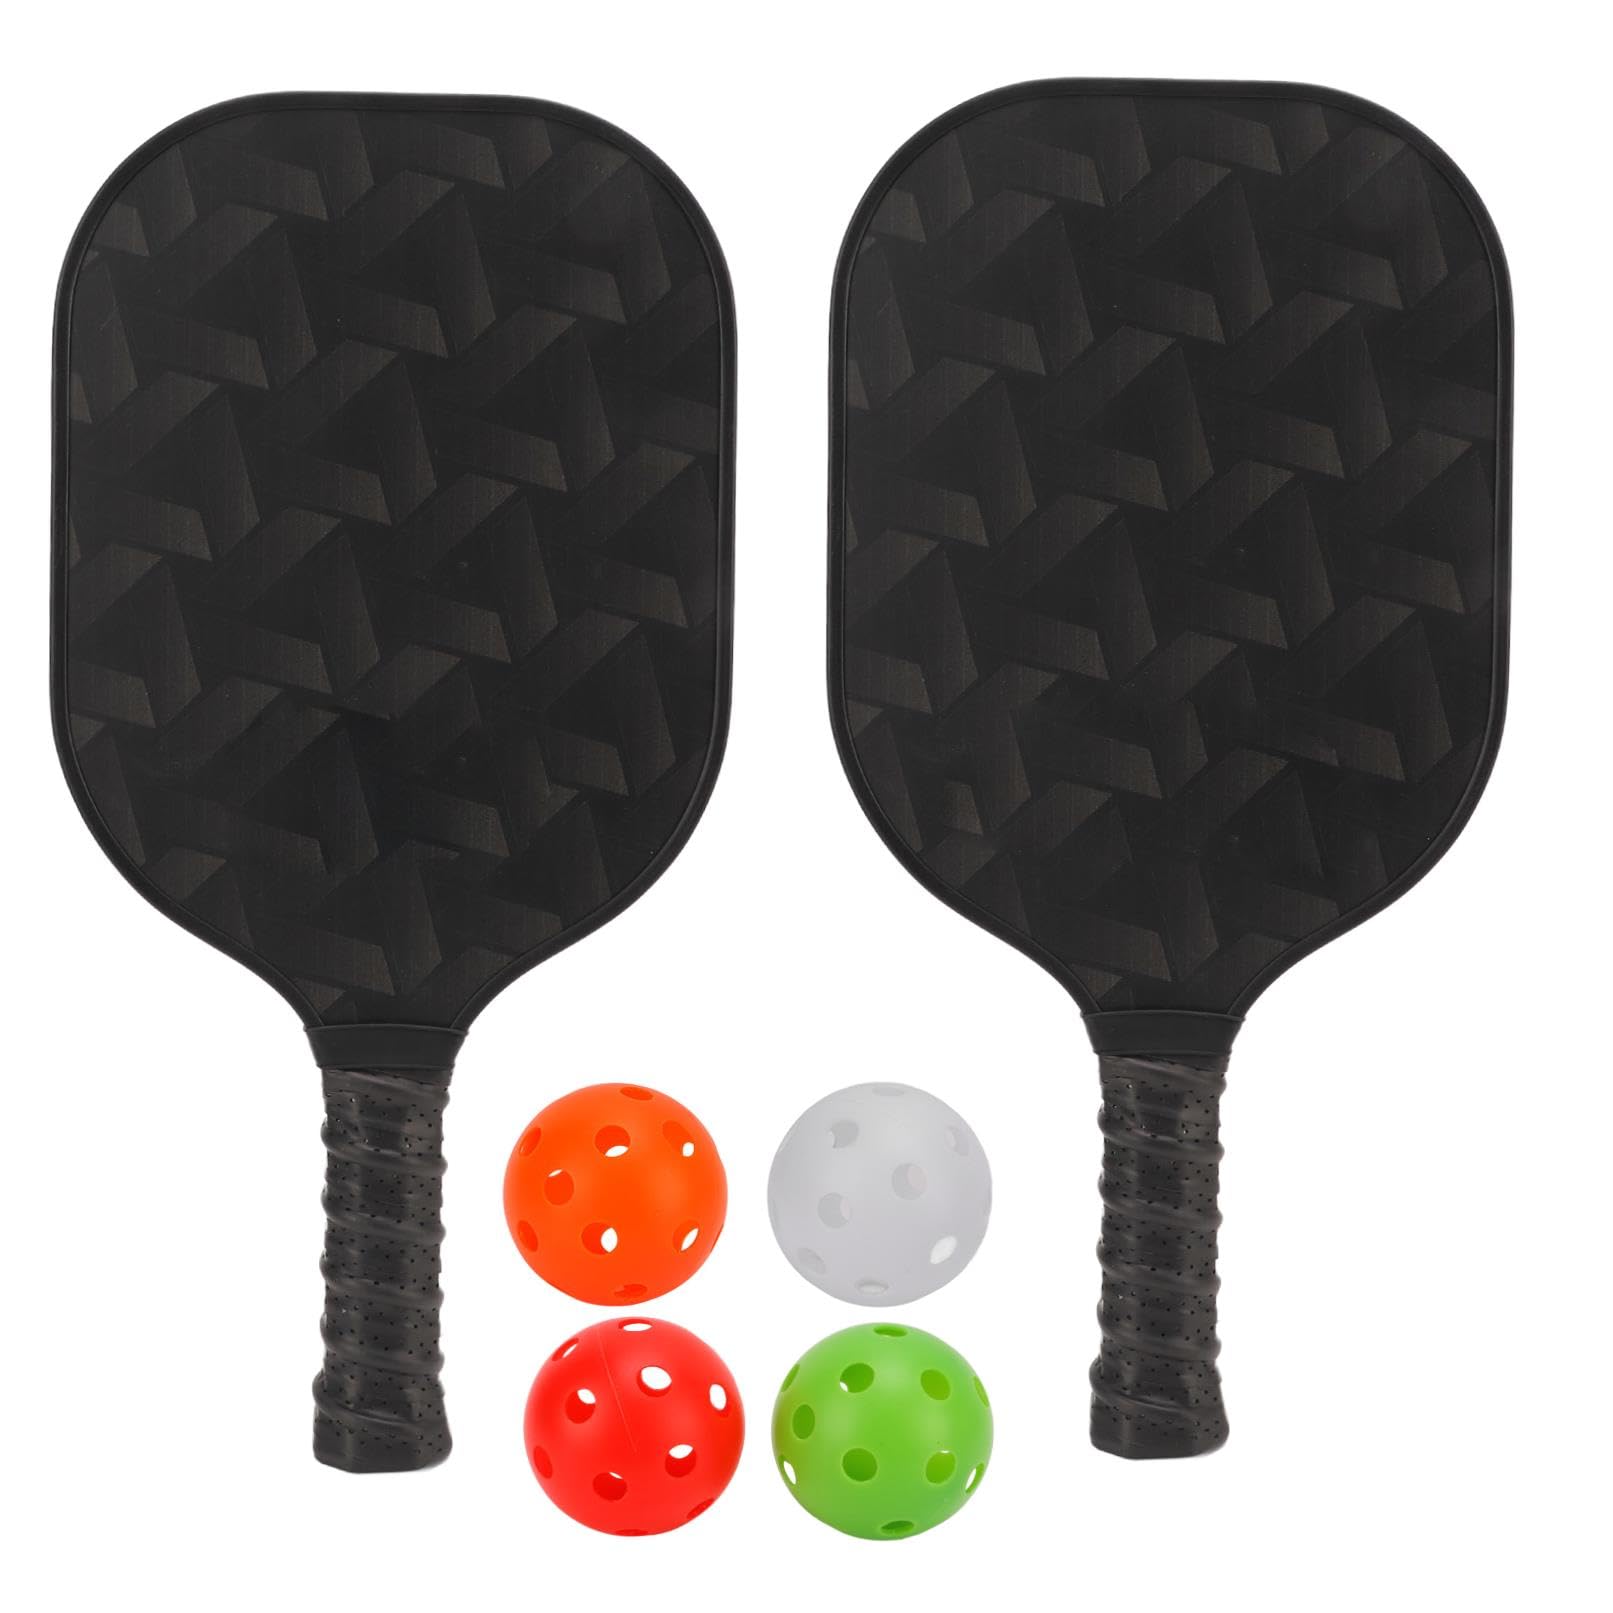 送料無料Portable Carbon Fiber Pickleball Paddle Set with 4 Balls - Lightweight Training Equipment for On-The-Go Play並